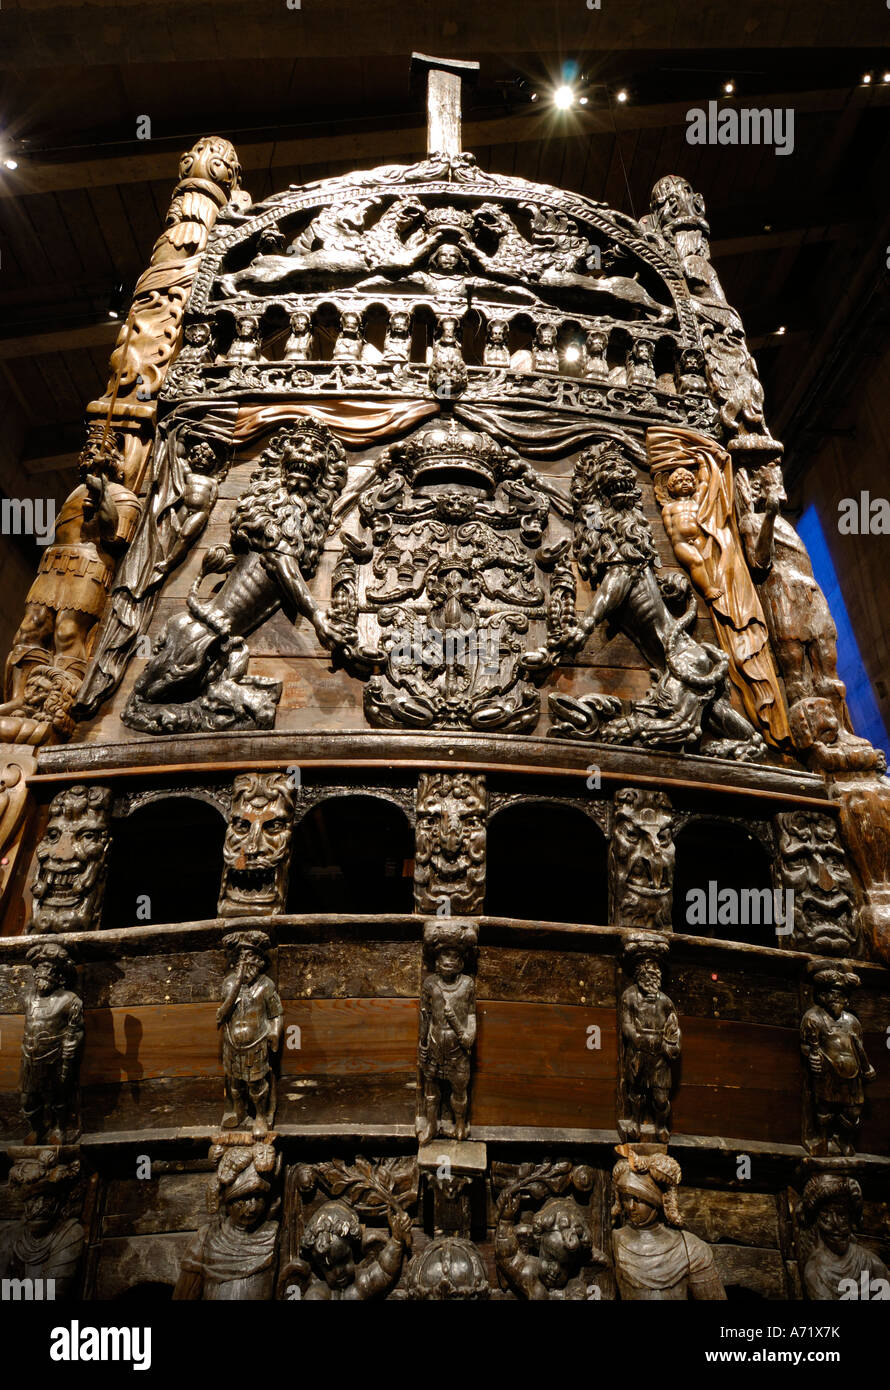 Les sculptures en bois à l'arrière du cuirassé du 17e siècle au musée Vasa Vasa à Stockholm, Suède Banque D'Images